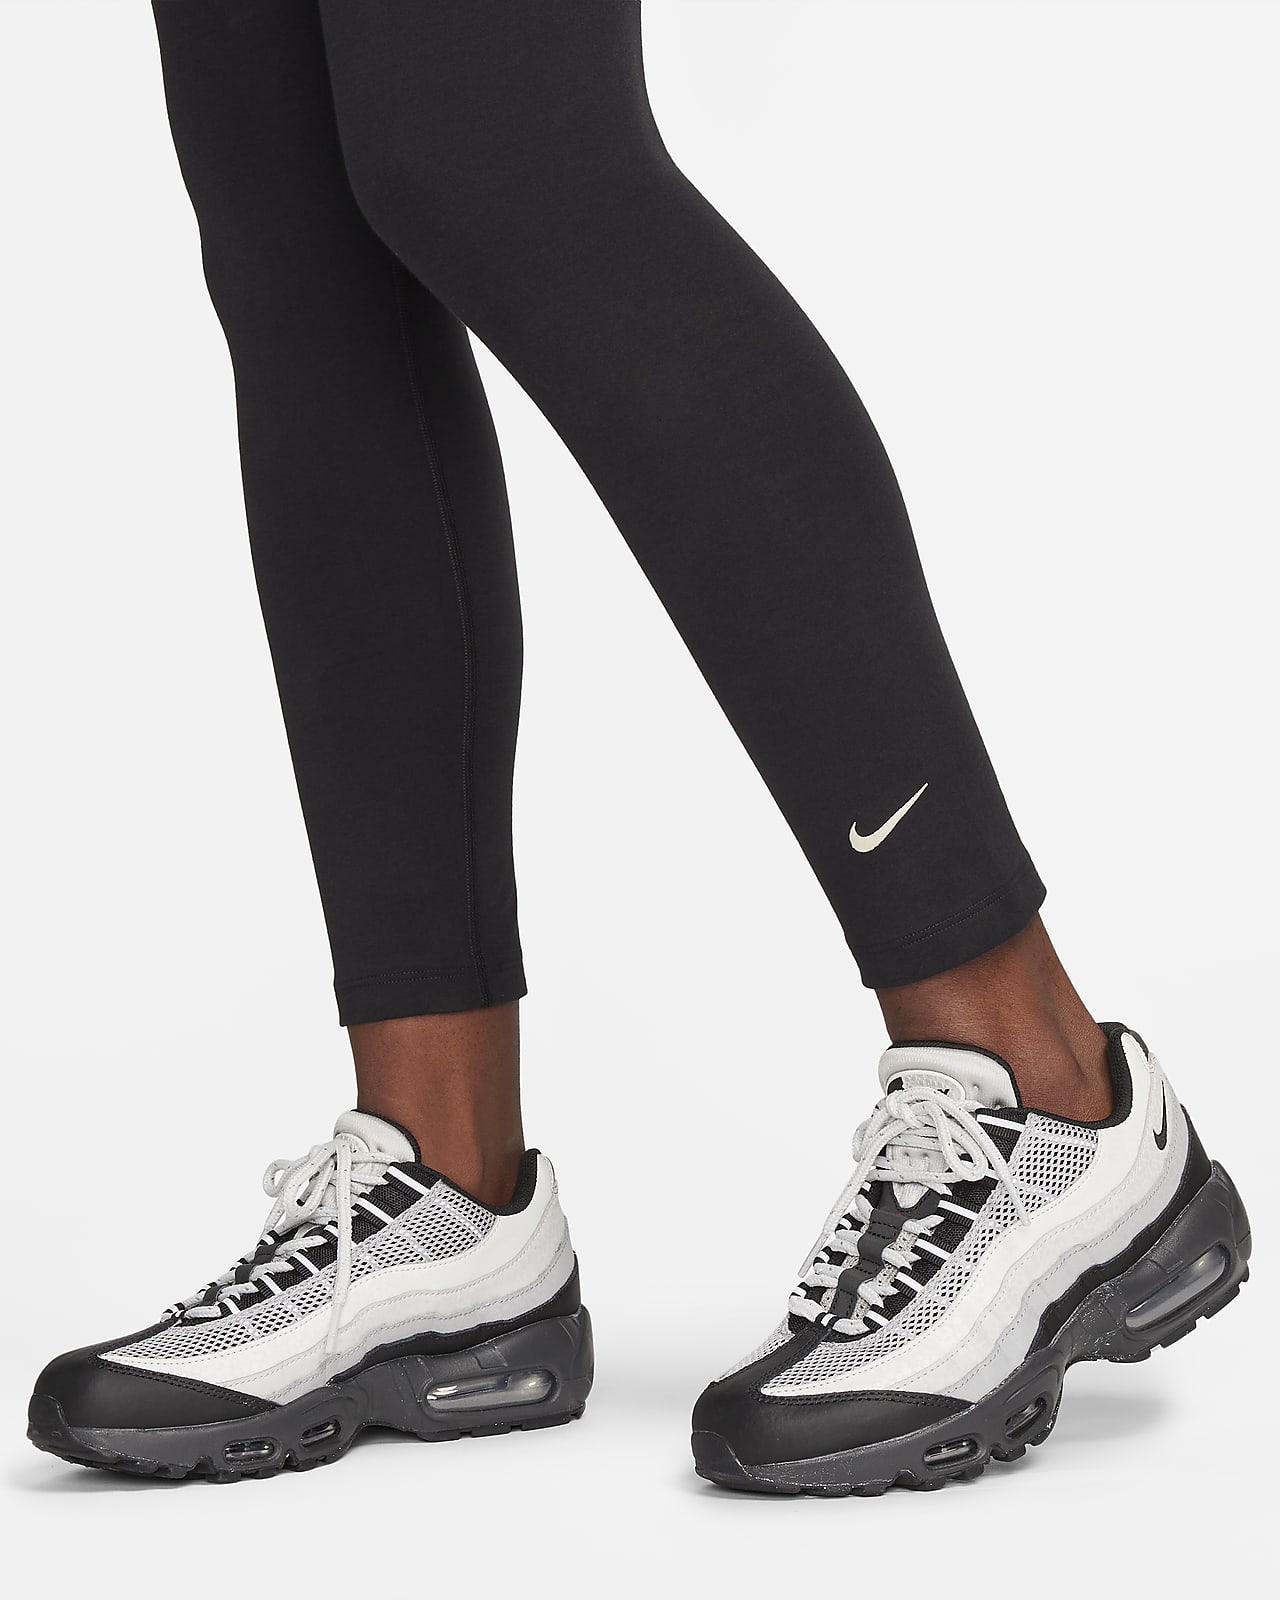 Nike Womens Swoosh 7/8 Leggings - Red